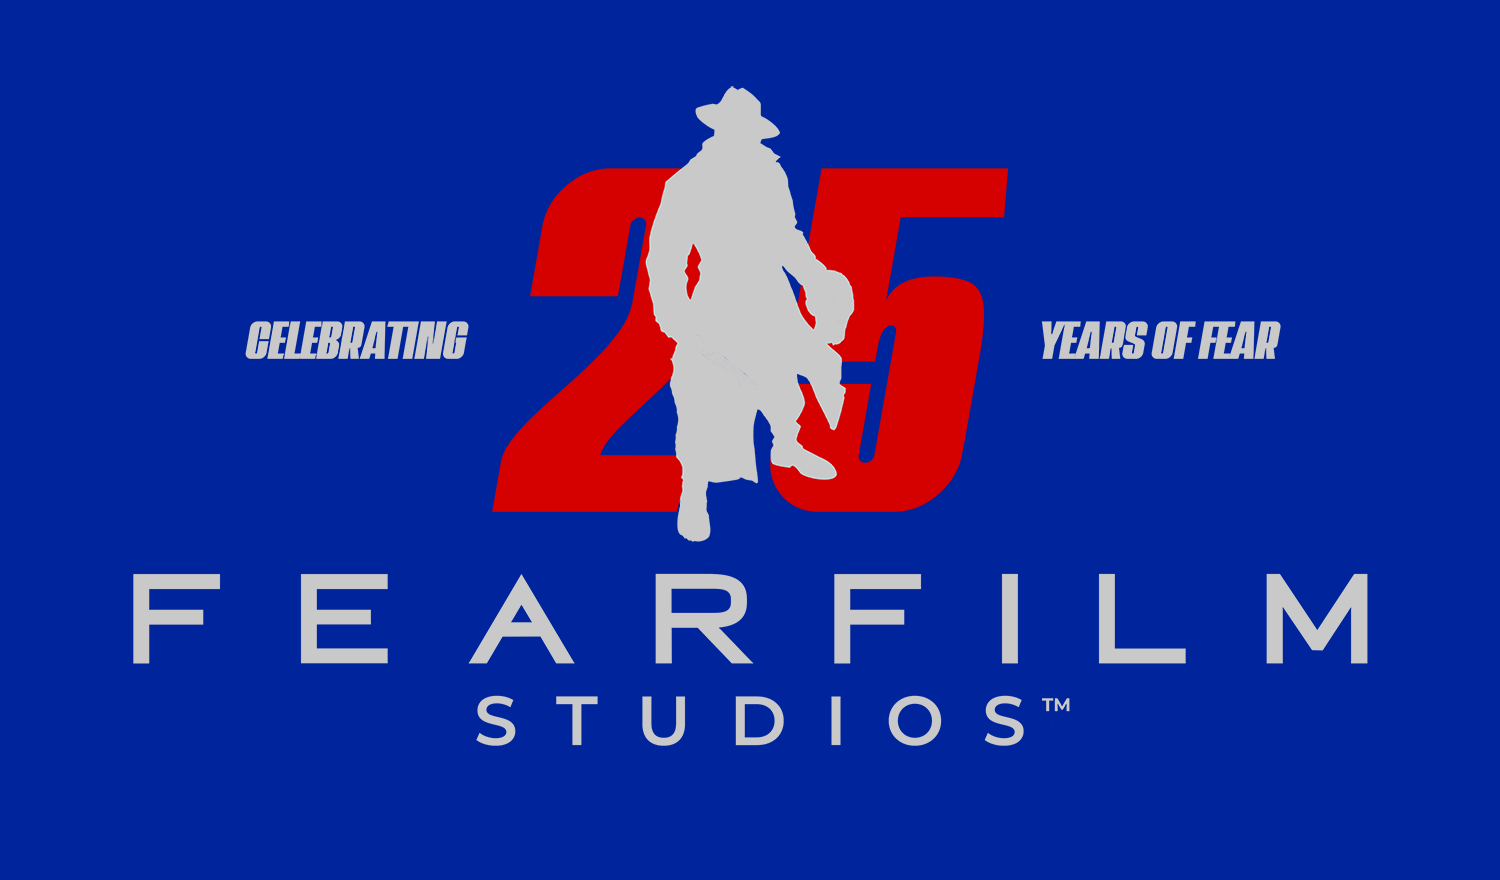 FEAR FILM Studios celebrates 25 years of fear